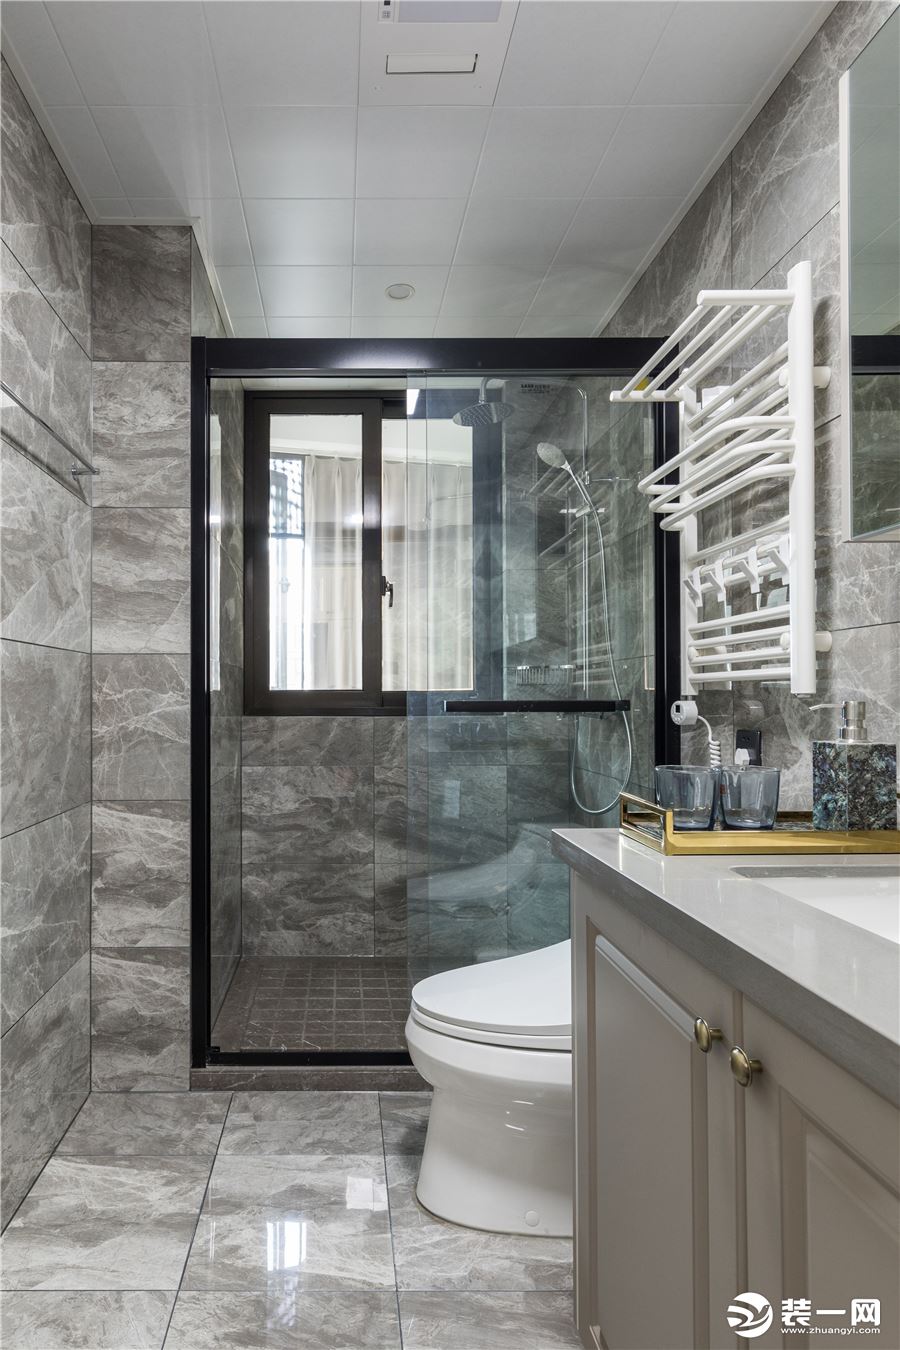 卫生间采用典型的干湿分离设计，内部是淋浴区，外面则是洗手区以及厕所区。整个卫生间墙面以及地板都采